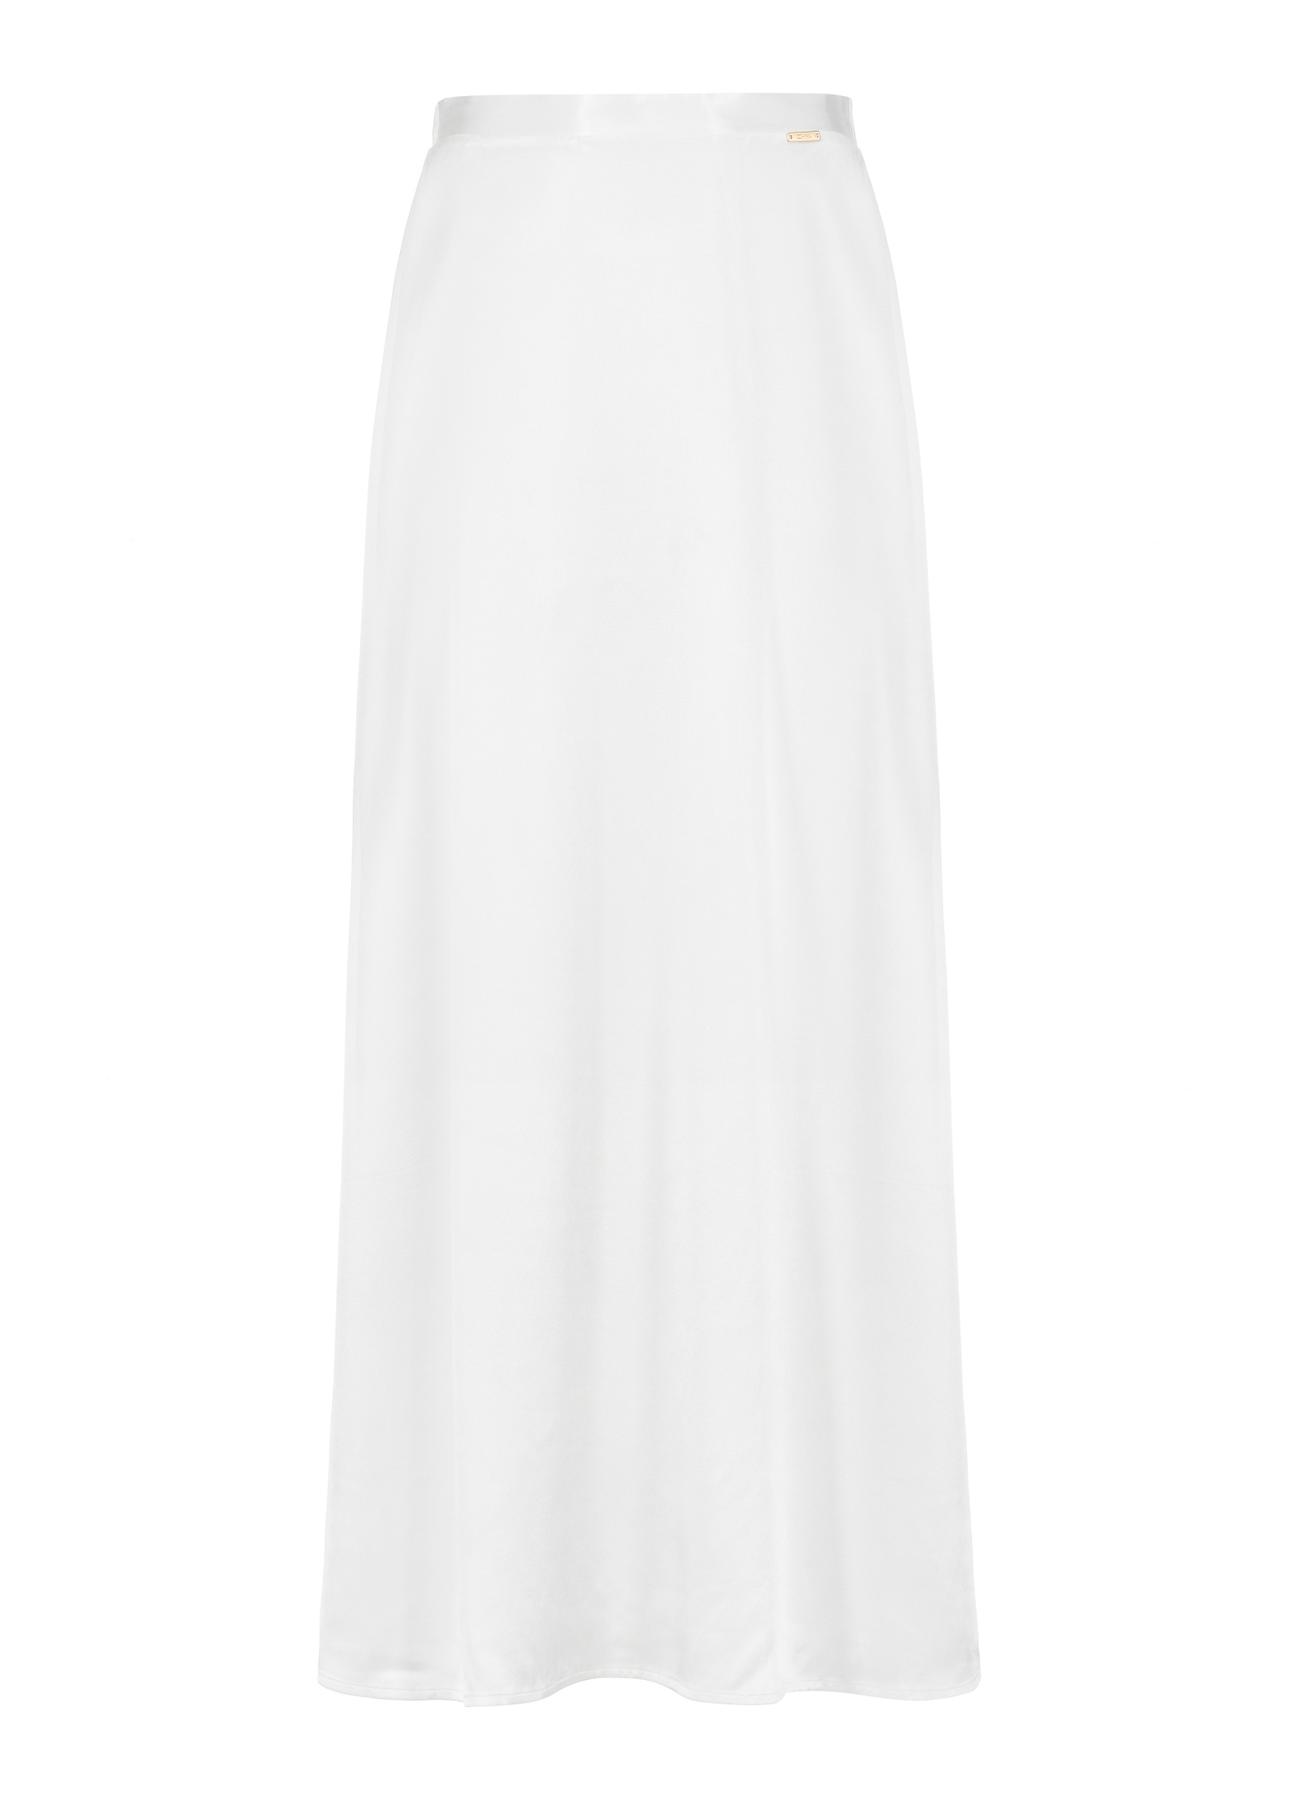 Długa prosta kremowa spódnica SPCDT-0083-12(W24)